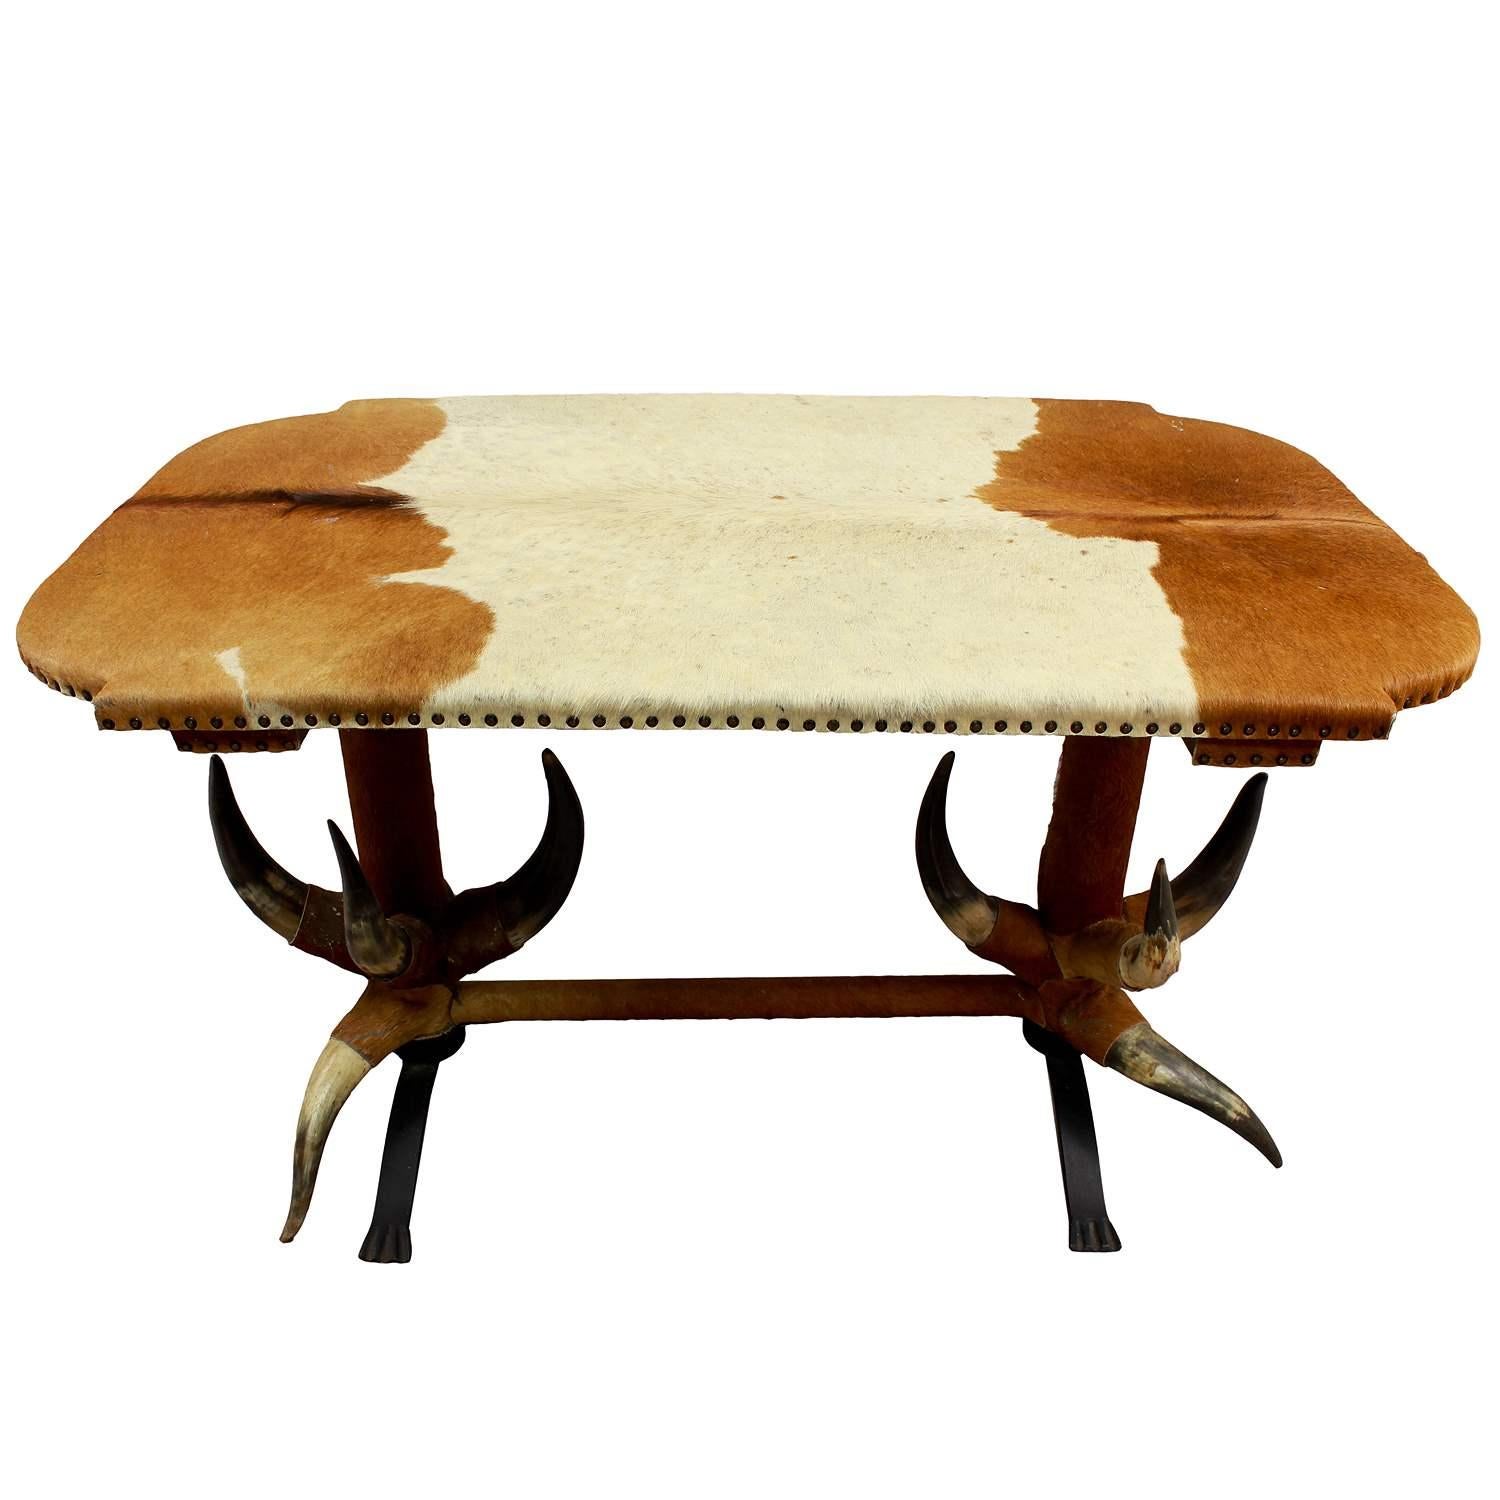 Table ancienne en corne de taureau ca. 1870

La table en corne de taureau est recouverte d'un manteau de bovin ancien qui doit être renouvelé (il perd ses poils). Les pieds en fer sont ajoutés pour améliorer la stabilité. Il a été fabriqué en